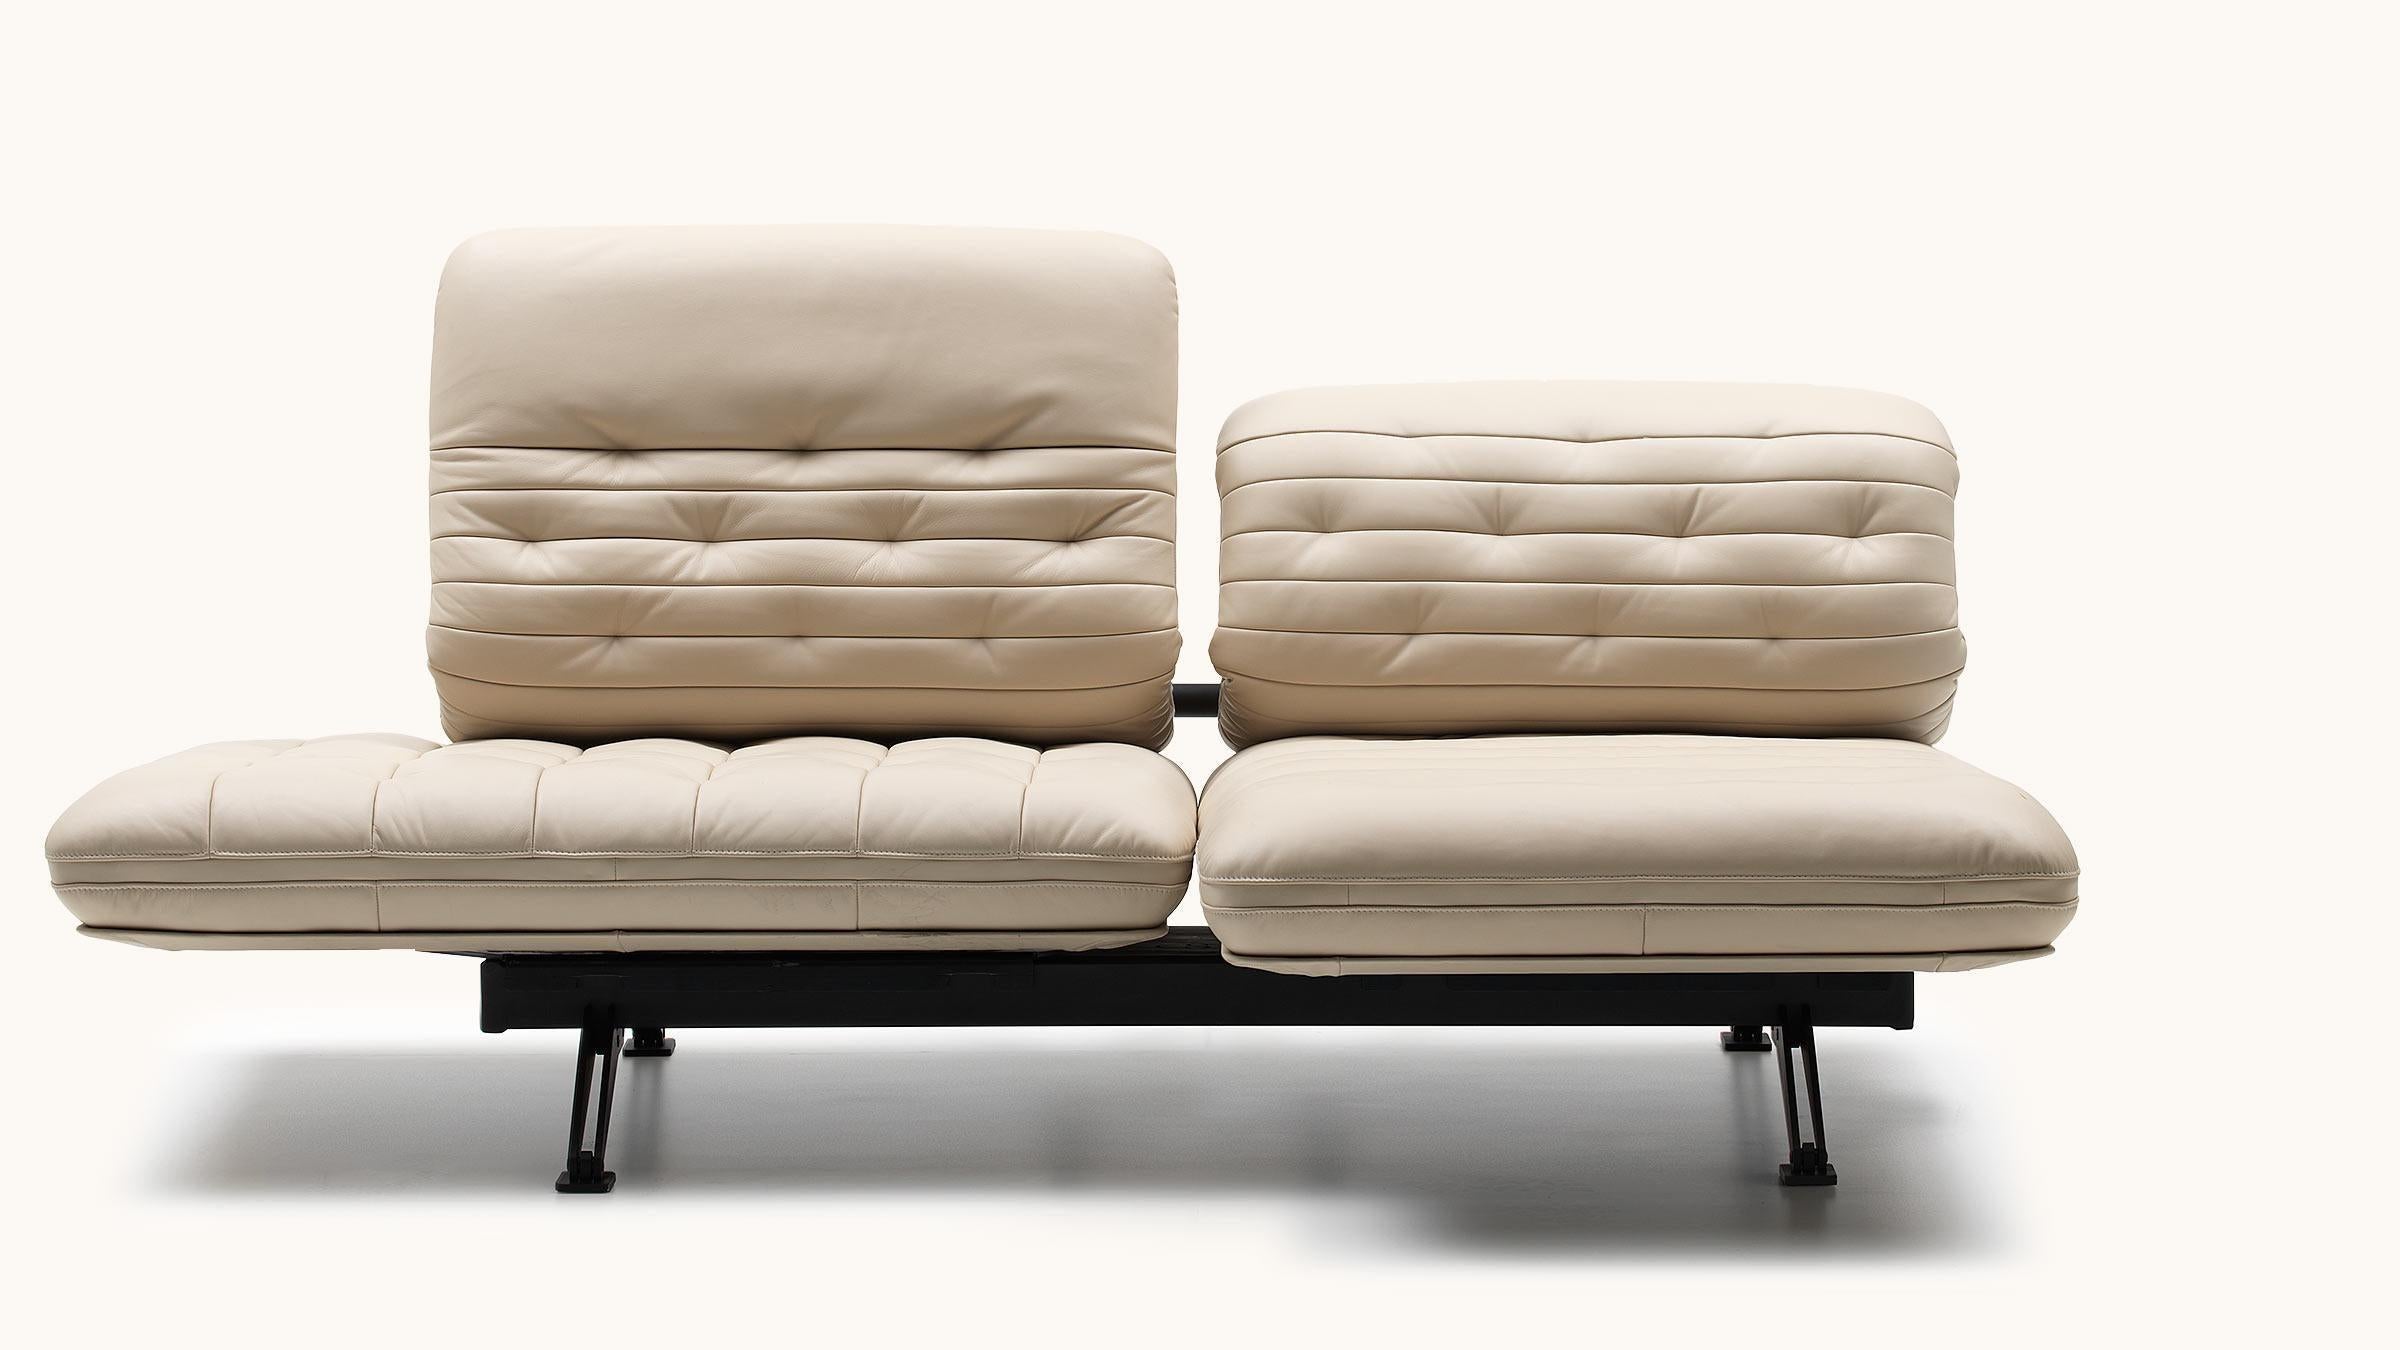 En deux coups de poignet, le DS-490 peut être transformé en double fauteuil de relaxation. Les unités d'assise avec un rembourrage aux coutures élaborées offrent un confort souple et créent un contraste avec la forme du siège aux contours précis et